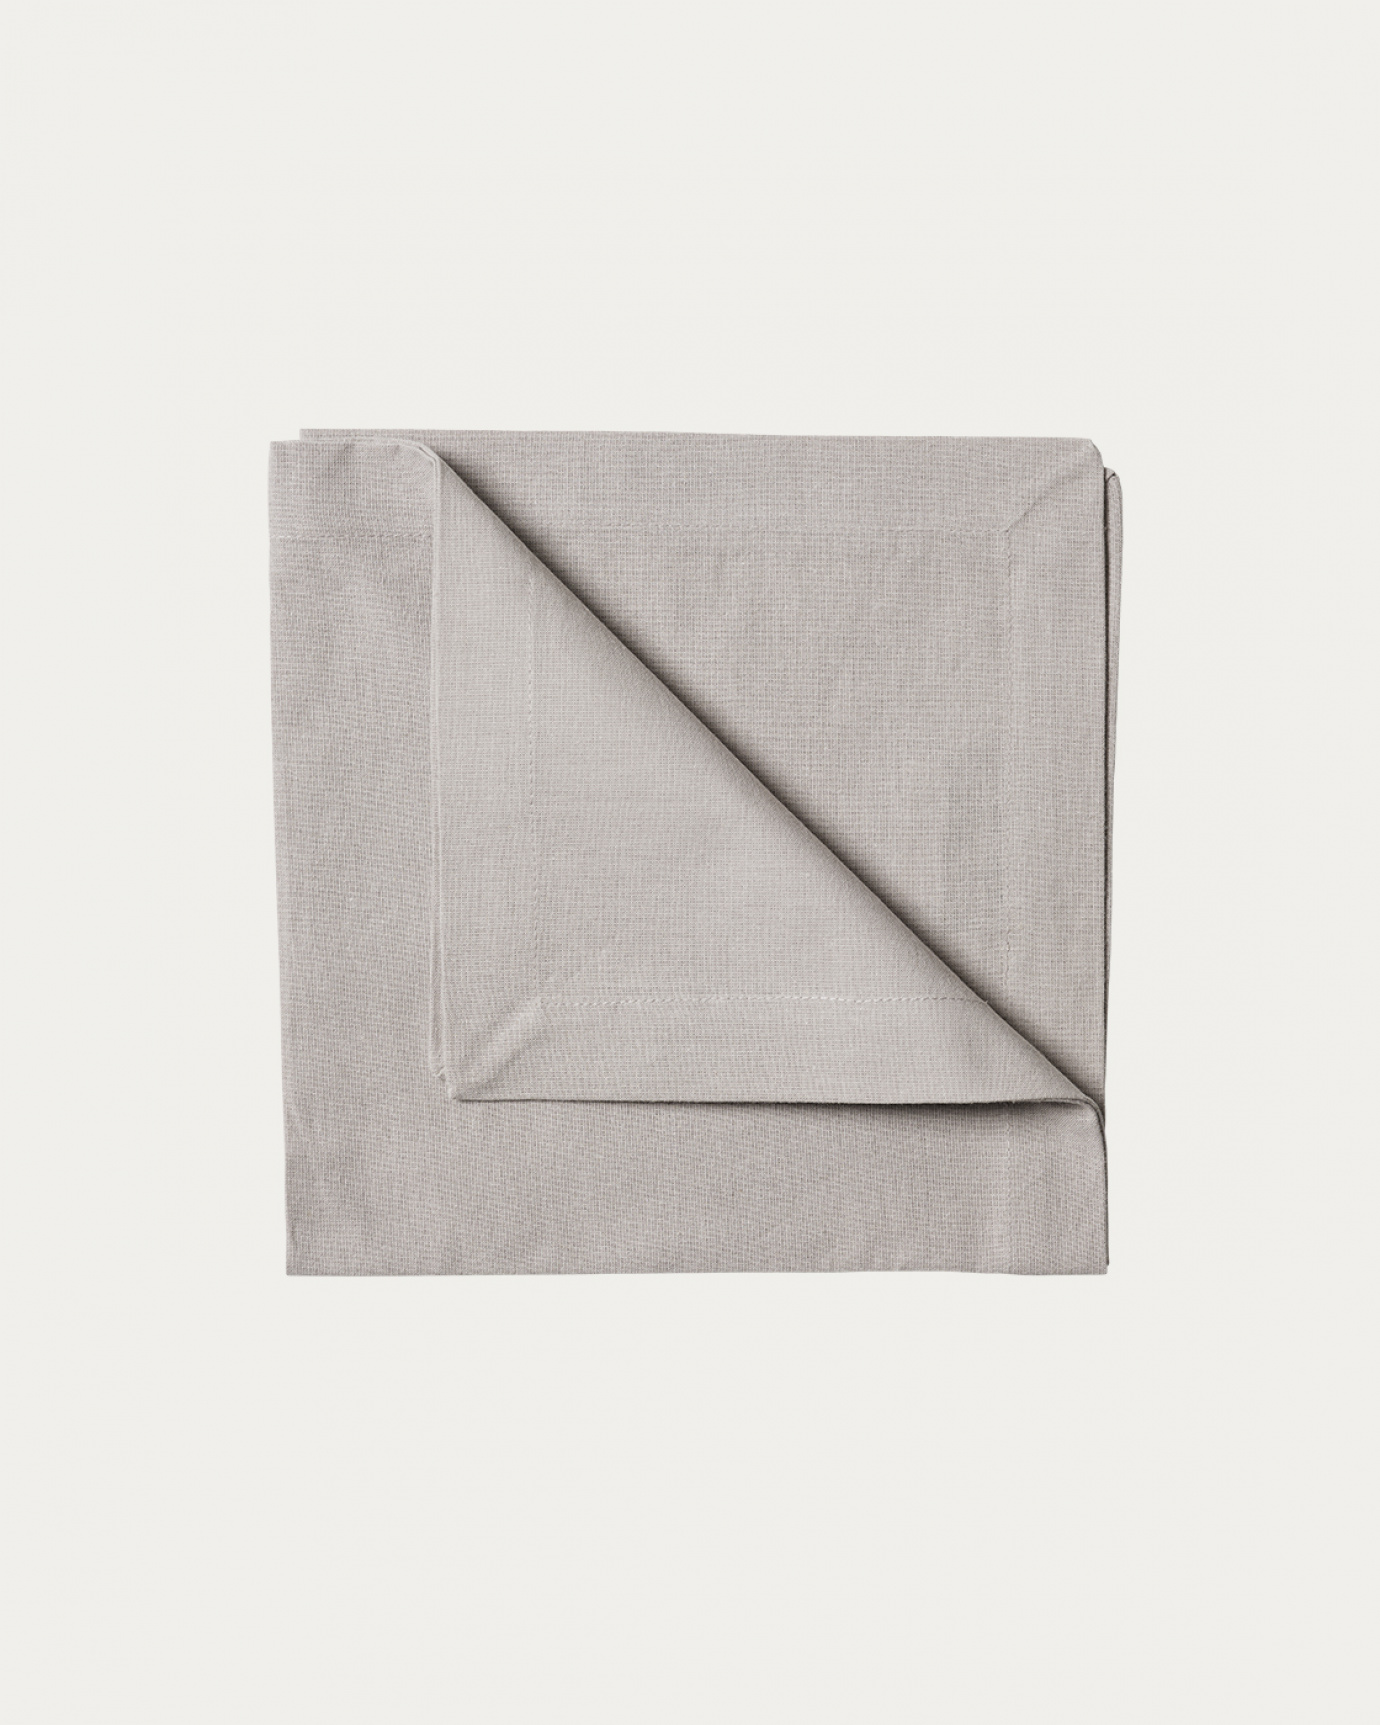 Produktbild hellgrau ROBERT Serviette aus weicher Baumwolle von LINUM DESIGN. Größe 45x45 cm und in 4er-Pack verkauft.